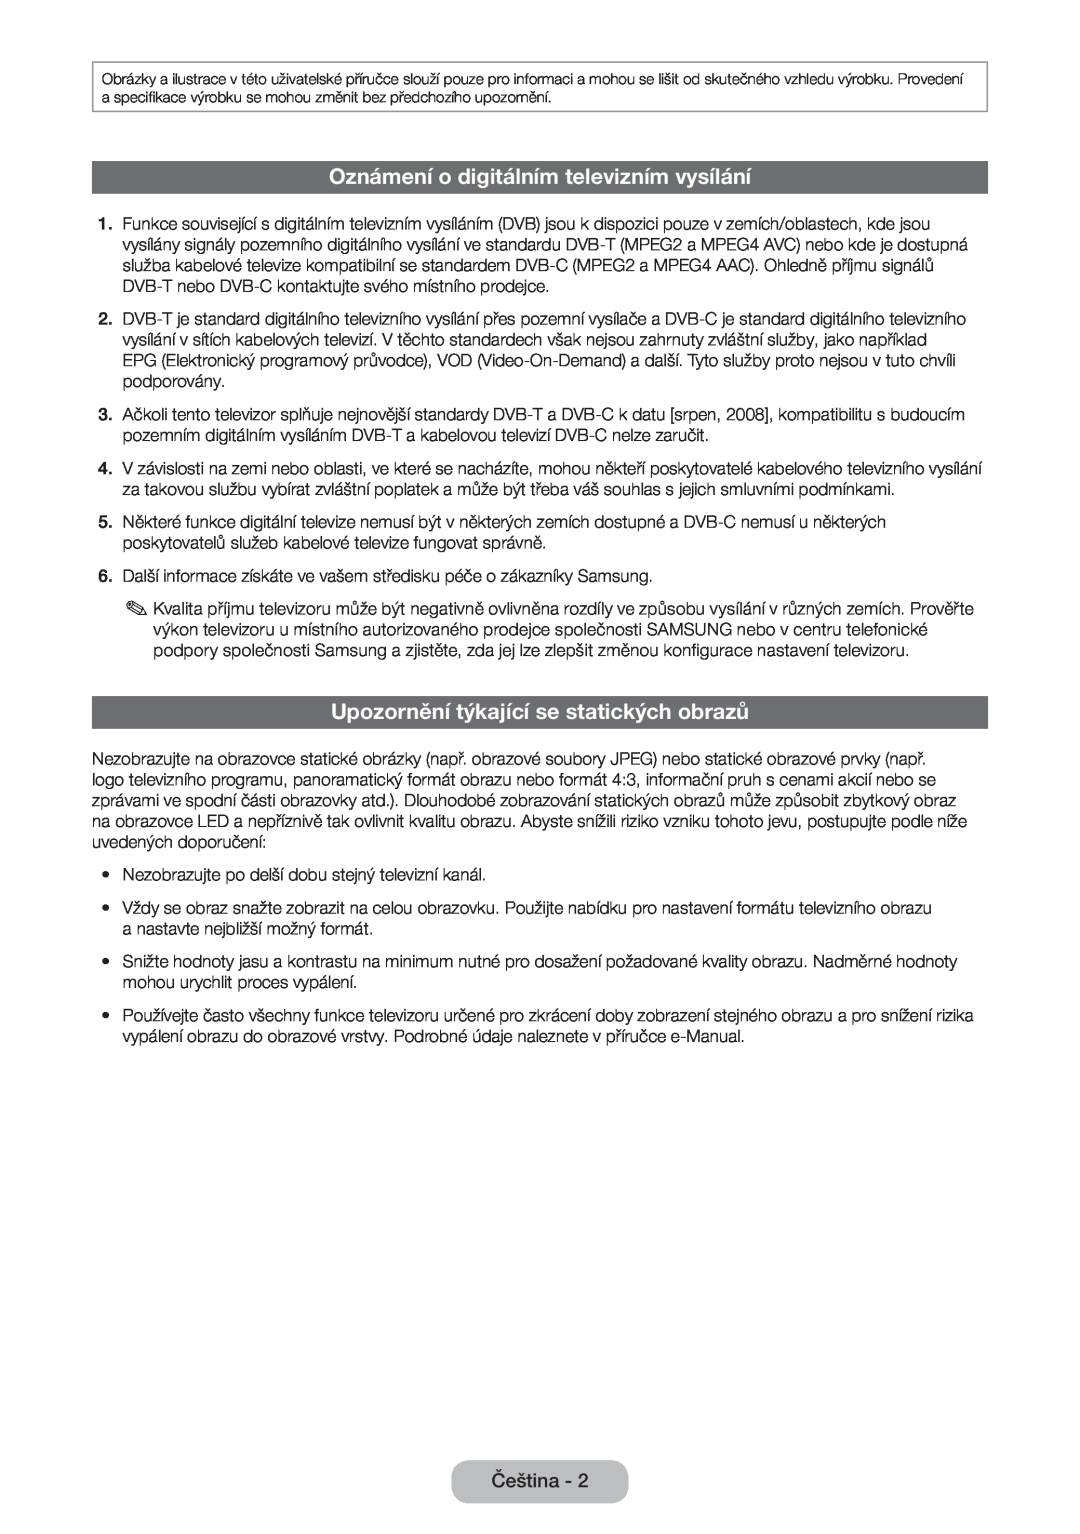 Samsung LT24D590EW/EN manual Oznámení o digitálním televizním vysílání, Upozornění týkající se statických obrazů, Čeština 